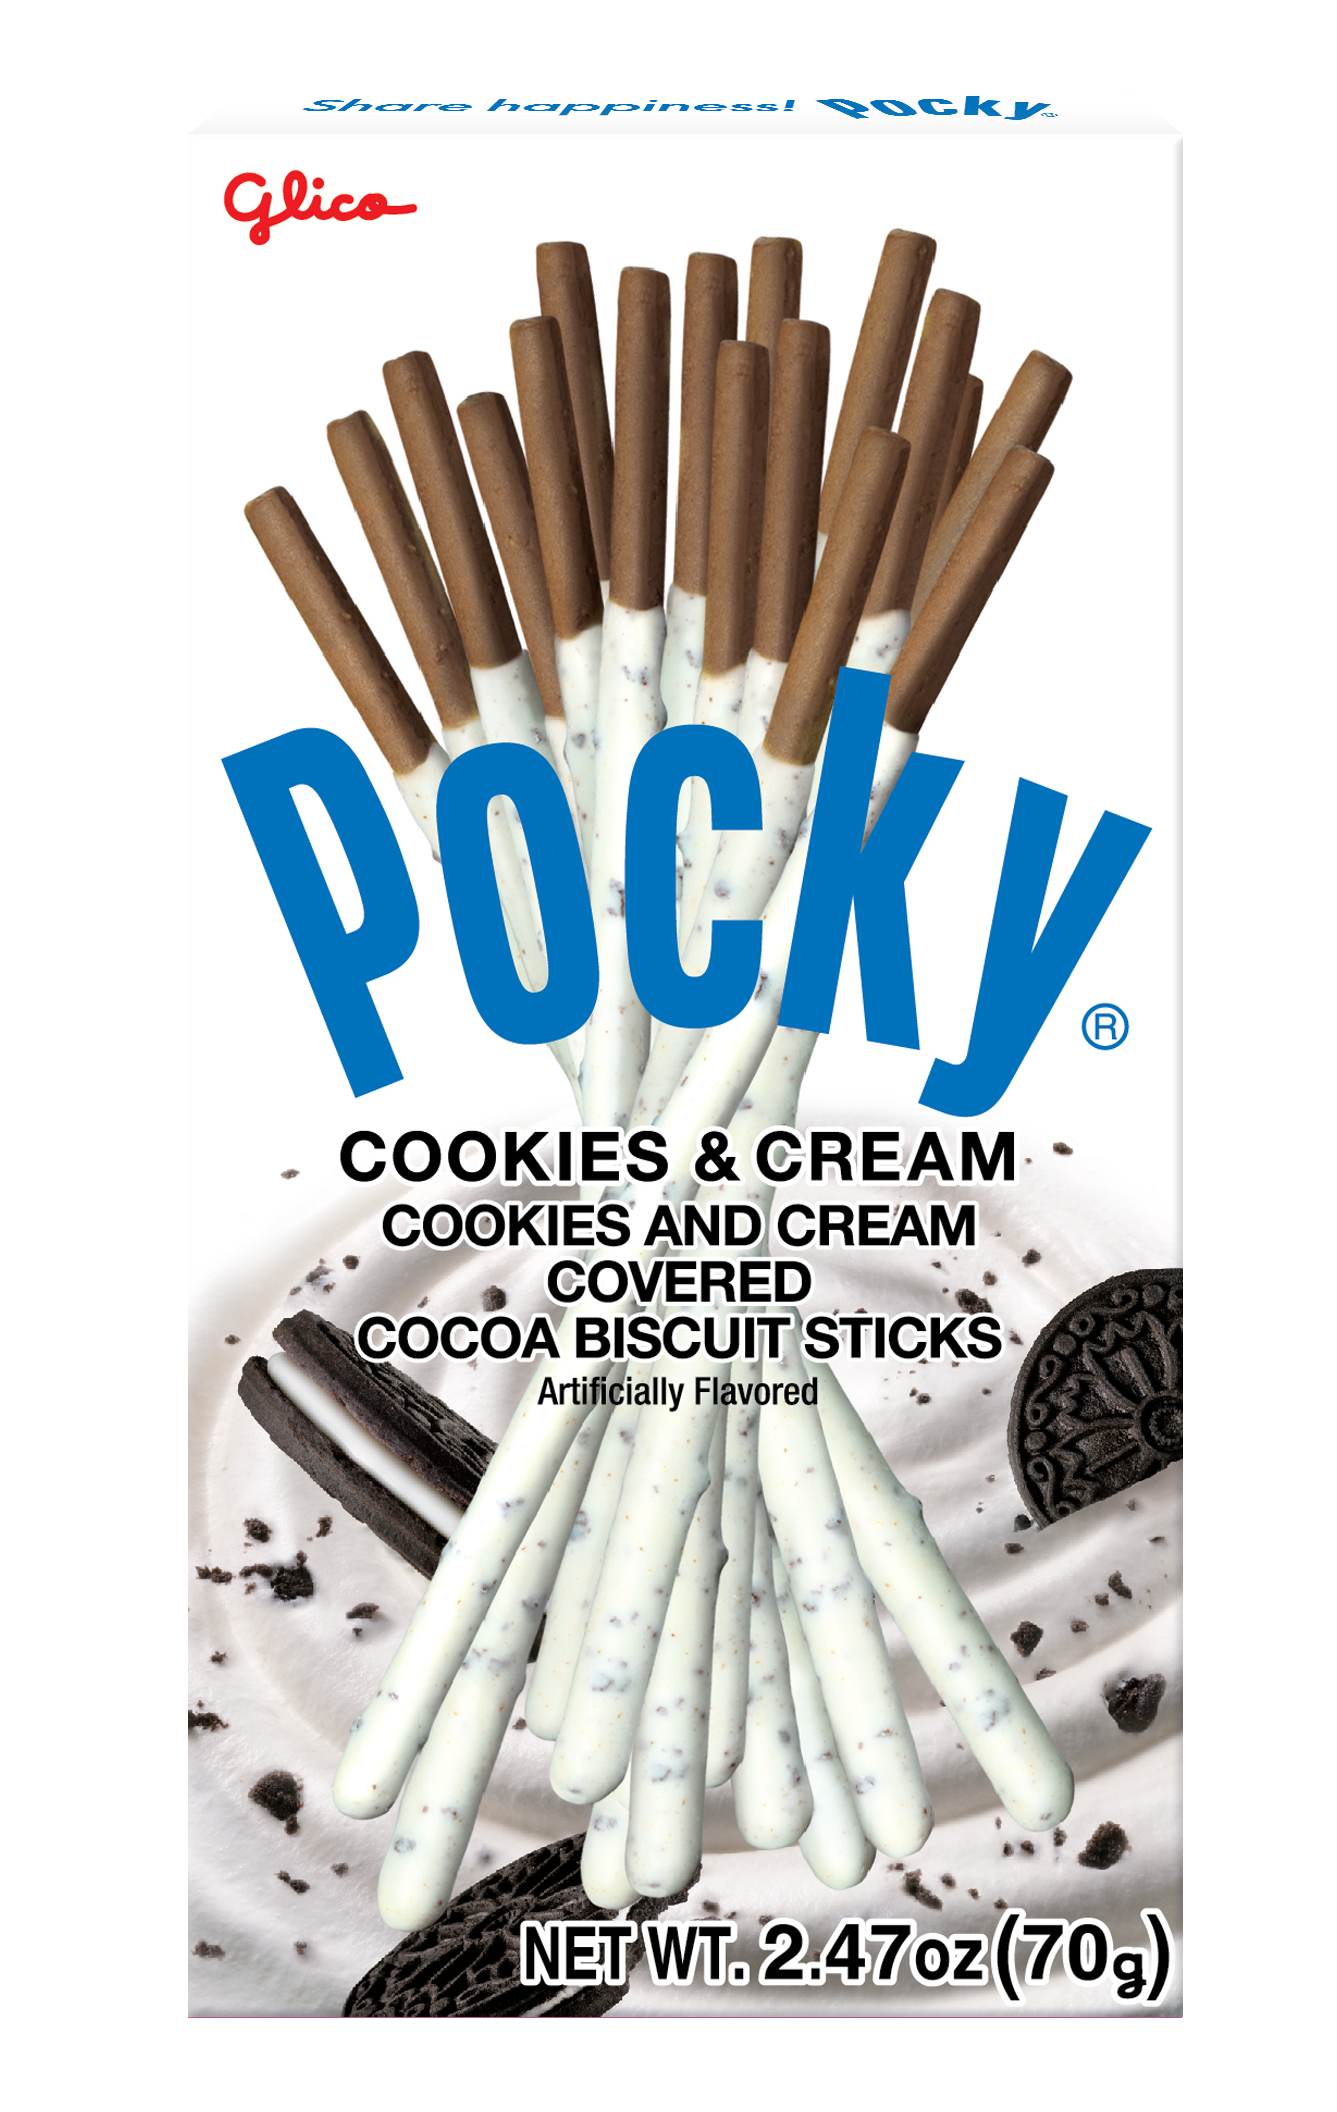 Pocky Cookies & Cream 2.47 oz